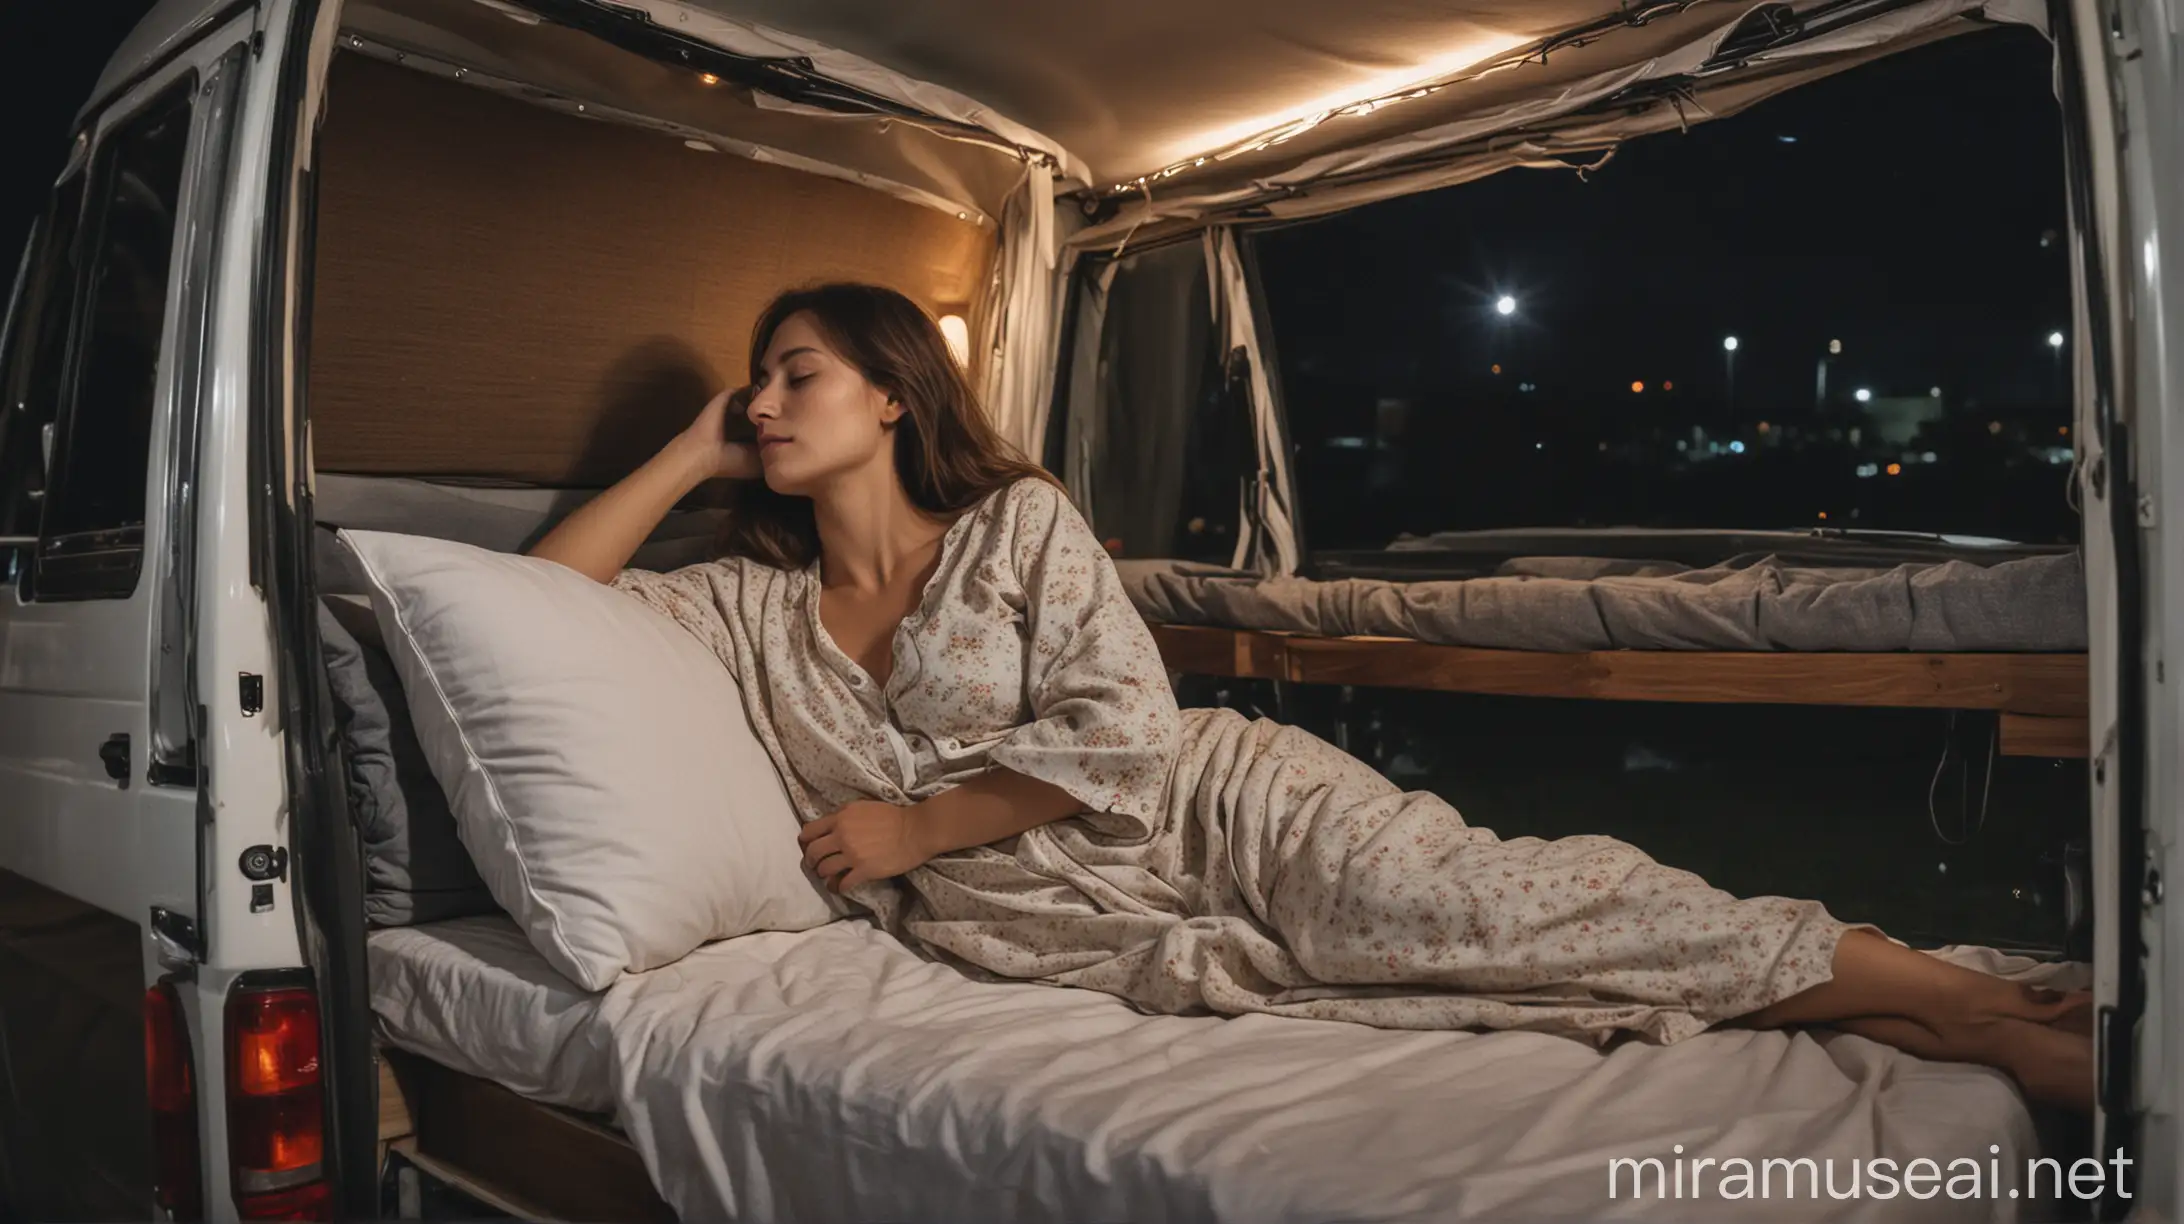 Peaceful Woman Sleeping in Campervan at Night